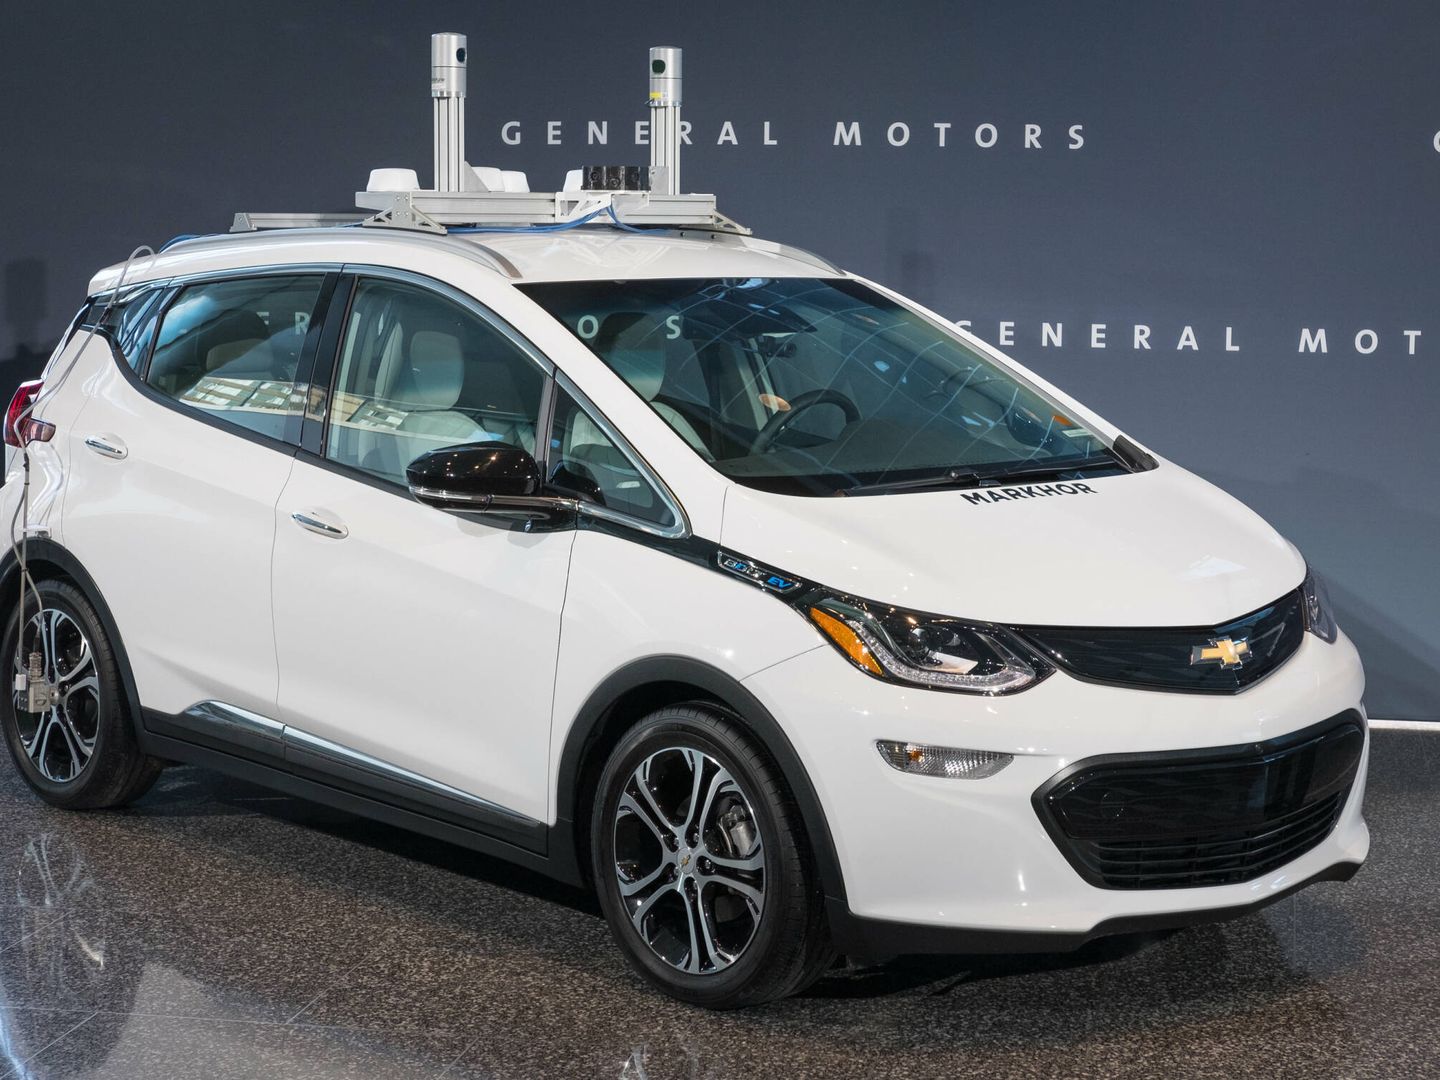 GM creó hace años un departamento específico para coches de conducción autónoma como el Bolt EV.